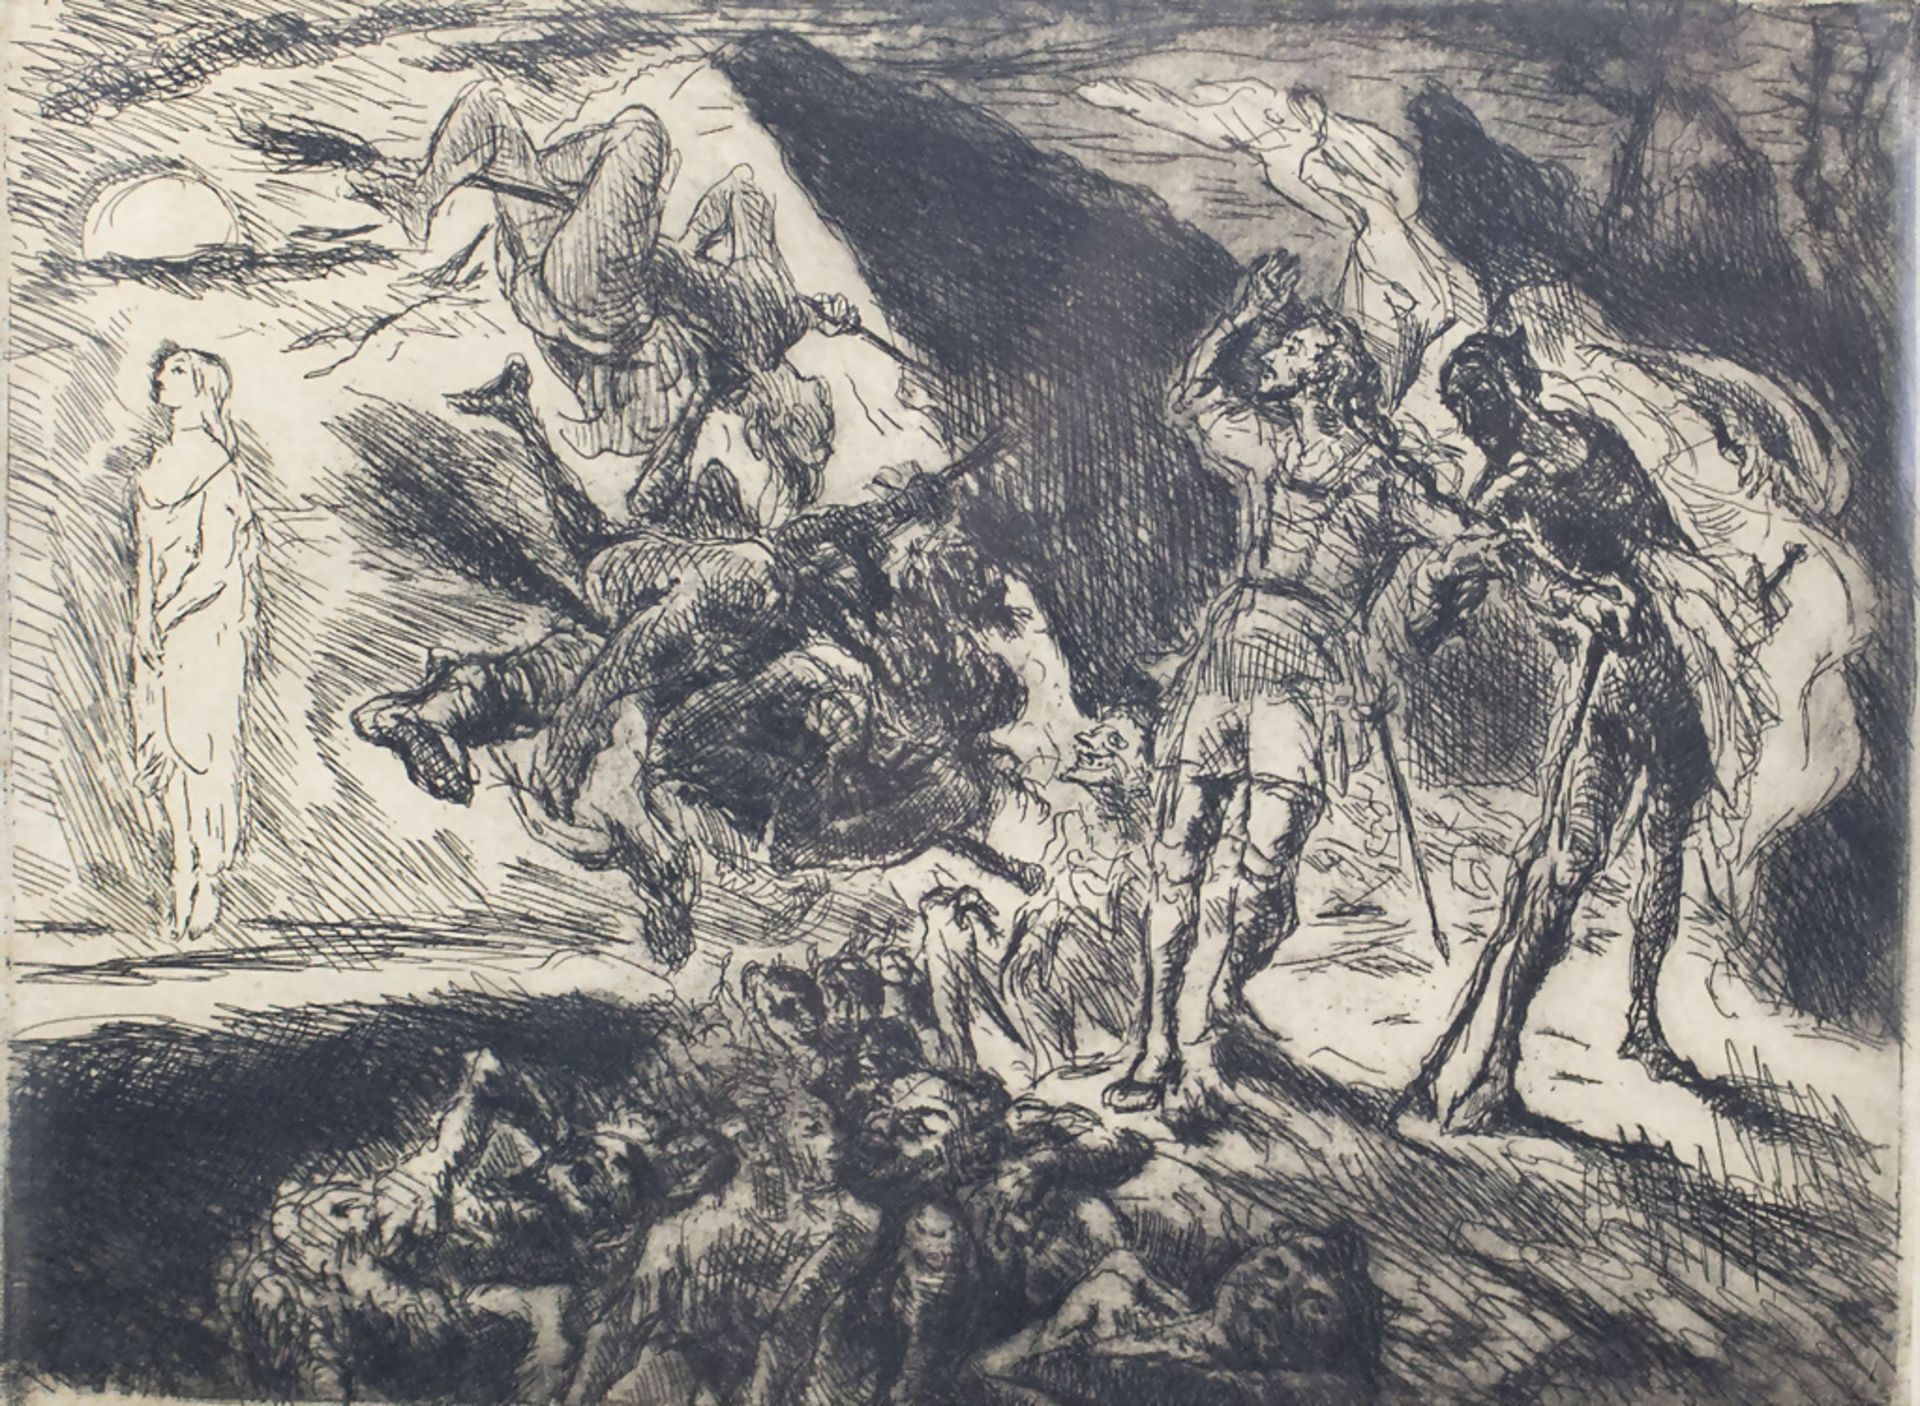 Max SLEVOGT (1868-1932), 'In der Walpurgisnacht' / 'Walpurgis Night'